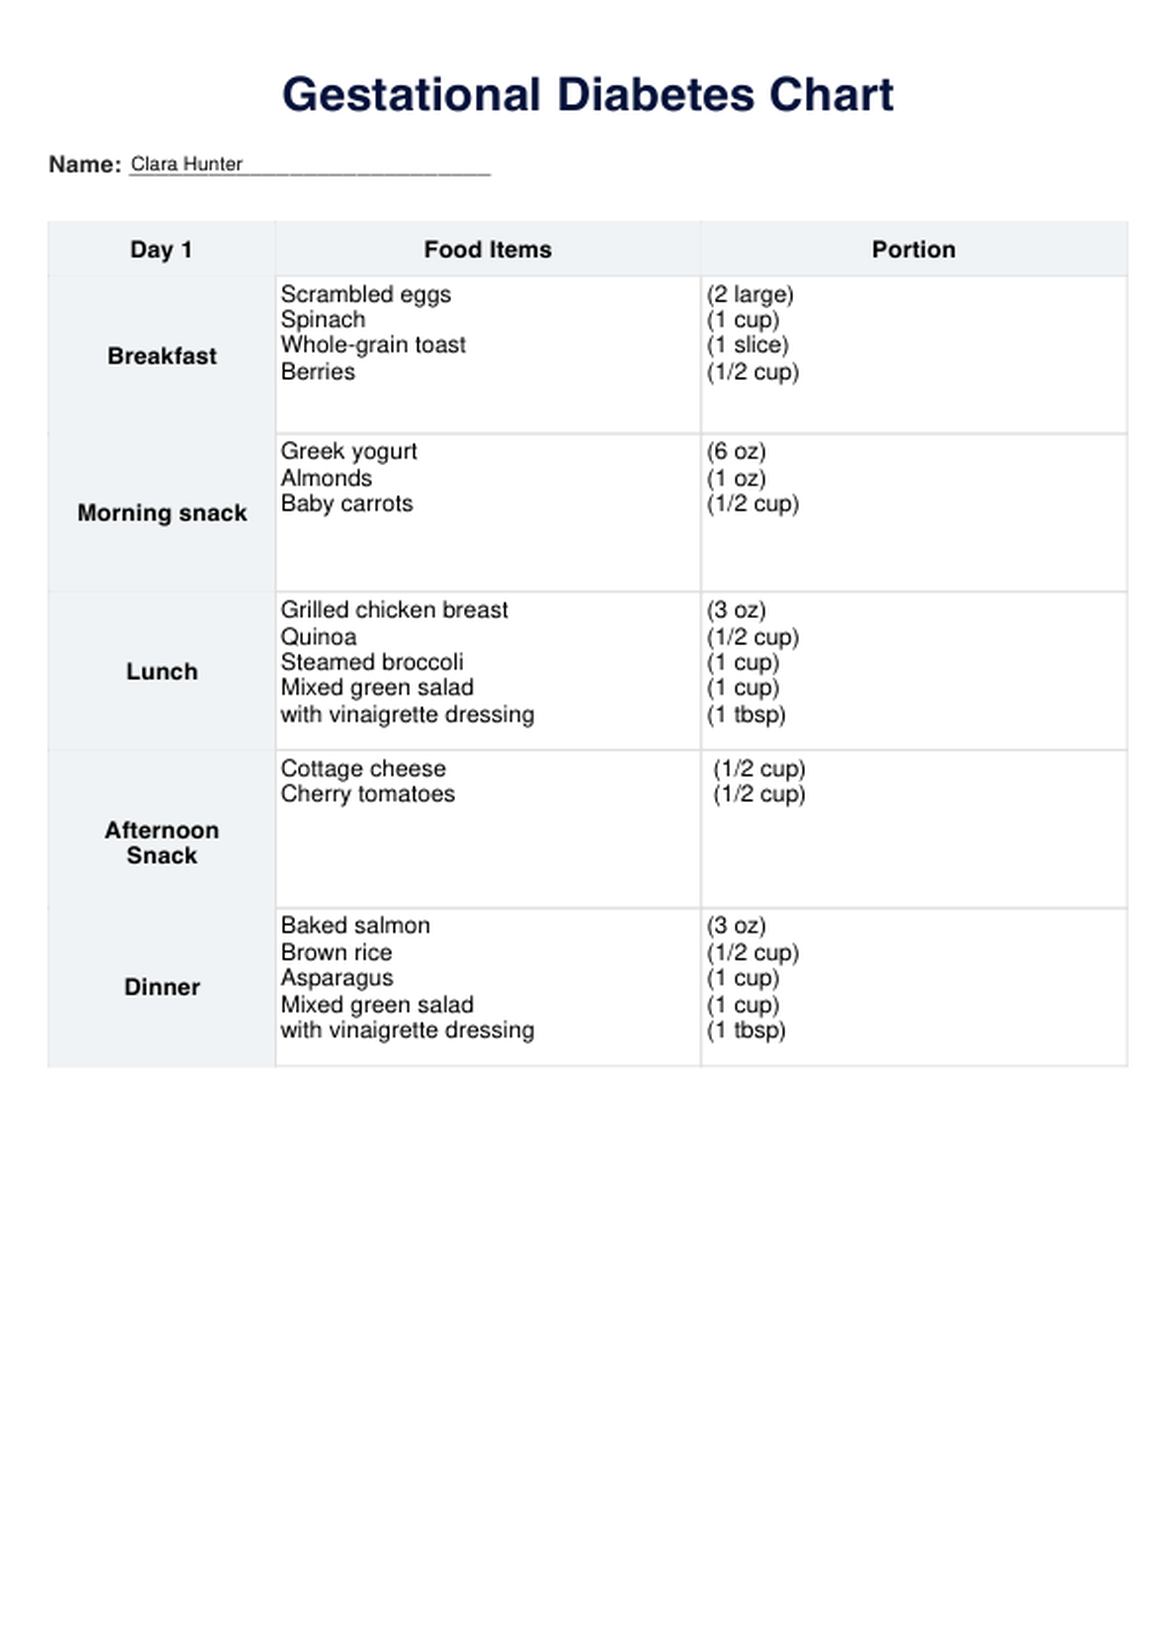 Dieta para la diabetes gestacional PDF Example